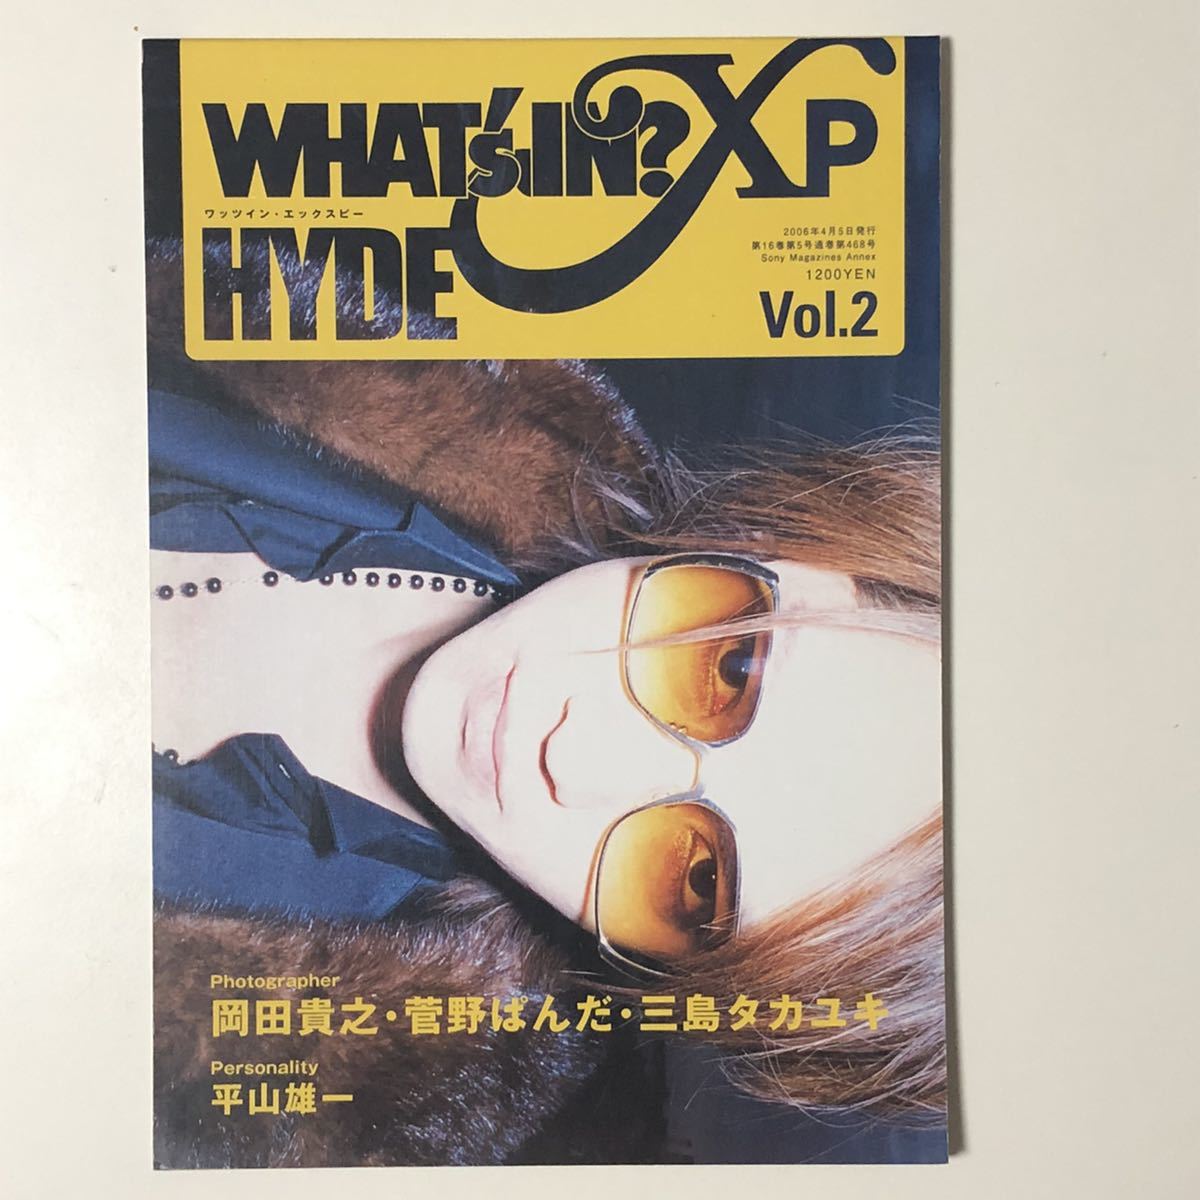 送料0円 2021特集 ワッツインエックスピー Vol.2 WHAT's IN XP ハイド HYDE Vol2 2巻 sannart.com sannart.com